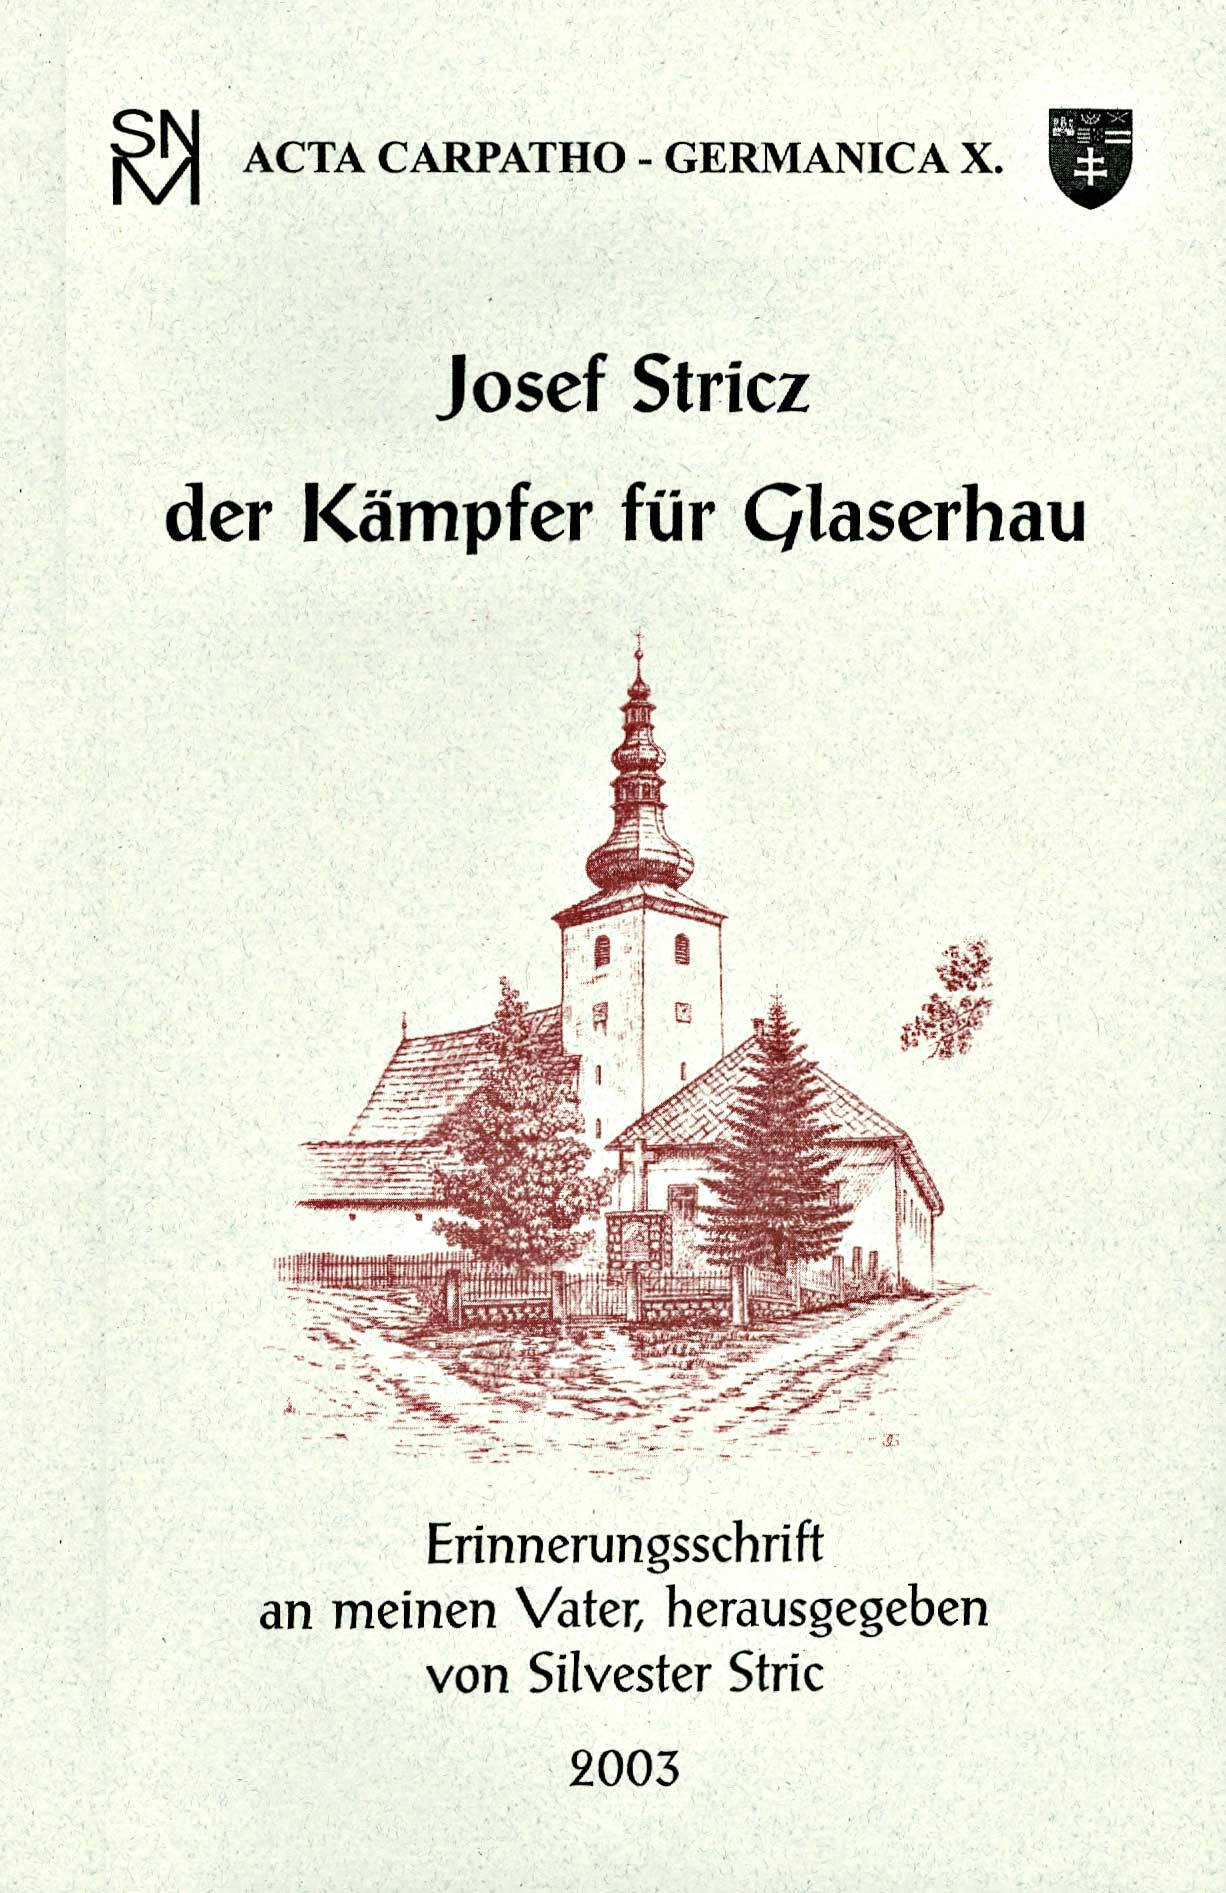 Josef Stricz. Der Kämpfer für Glaserhau.